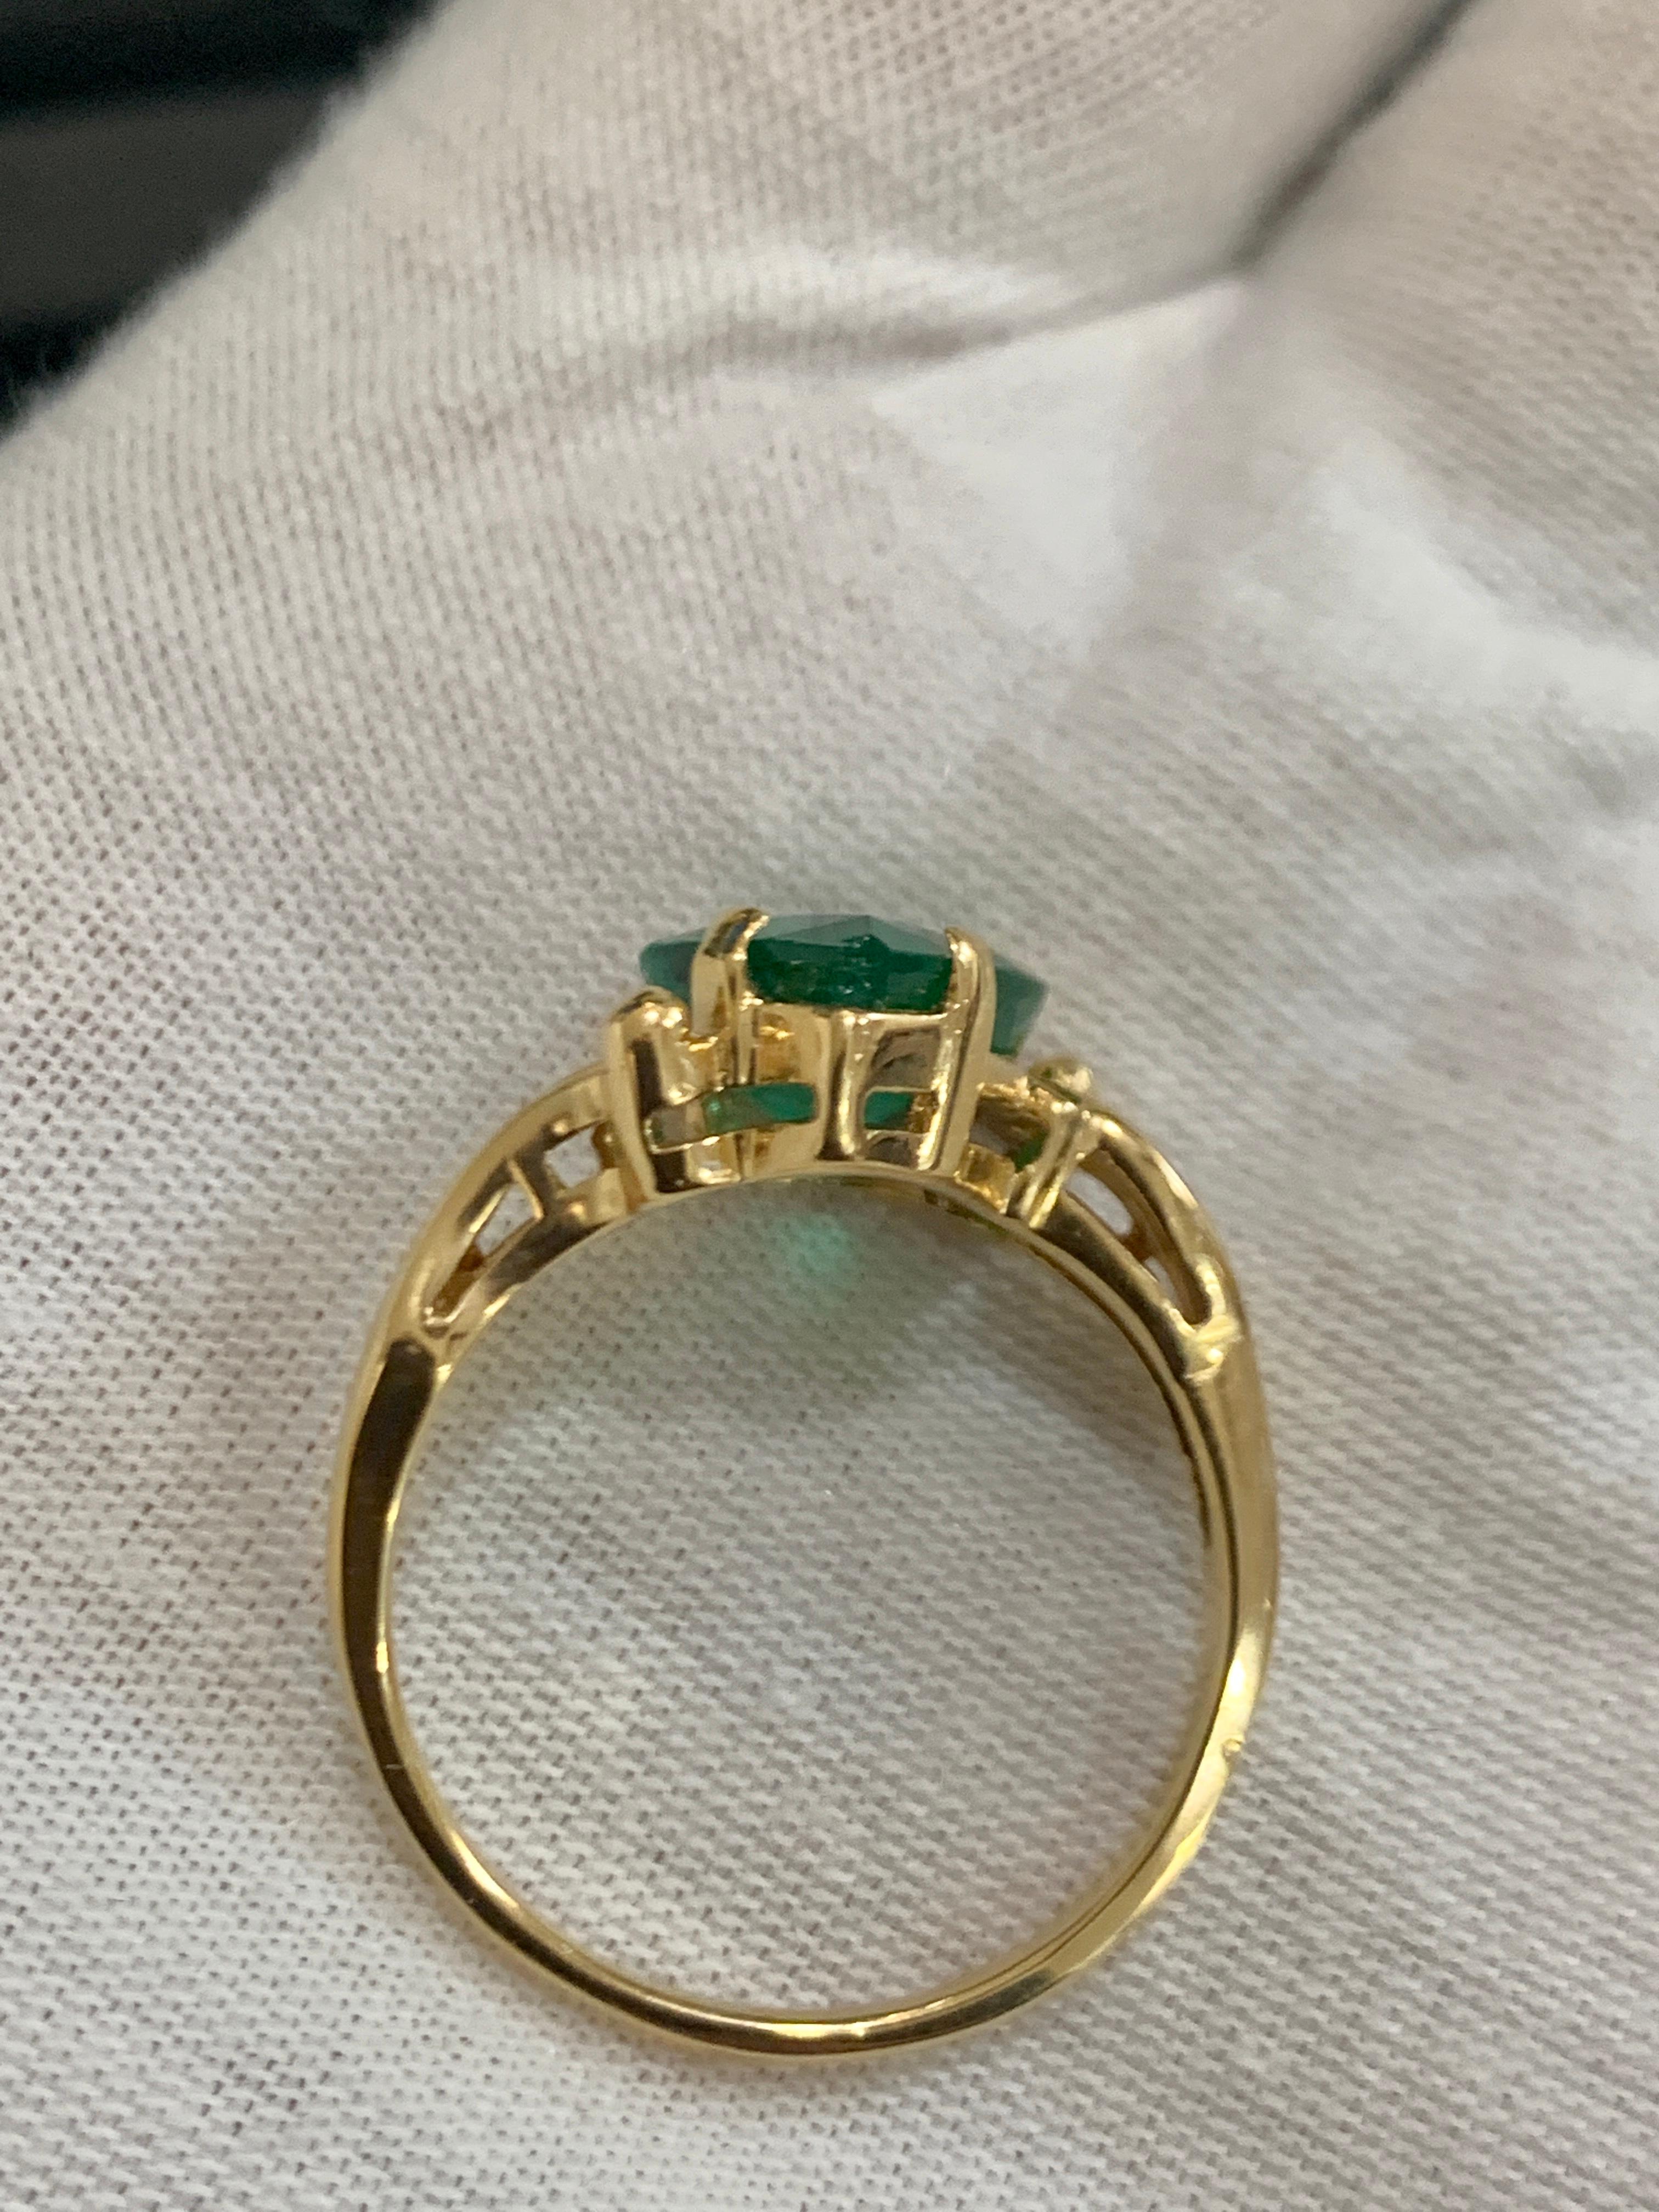 2.8 Carat Pear Cut Natural Emerald Ring 14 Karat Yellow Gold 3